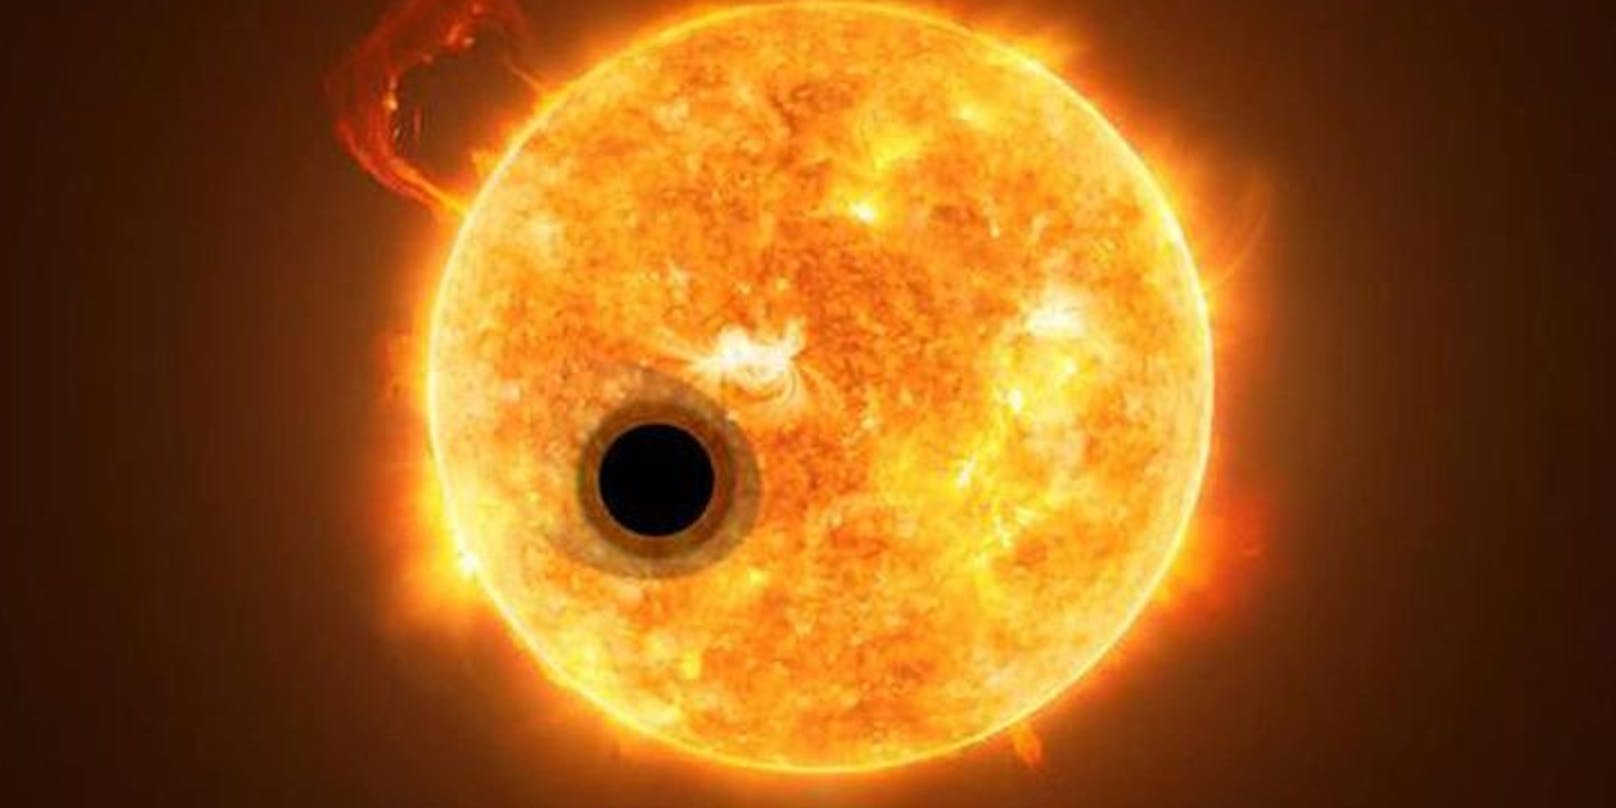 Der Exoplanet&nbsp;WASP-107b ist "ein absoluter Außenseiter", dessen Erforschung Erkenntnisse über die Entstehung von Planeten liefern könnte.